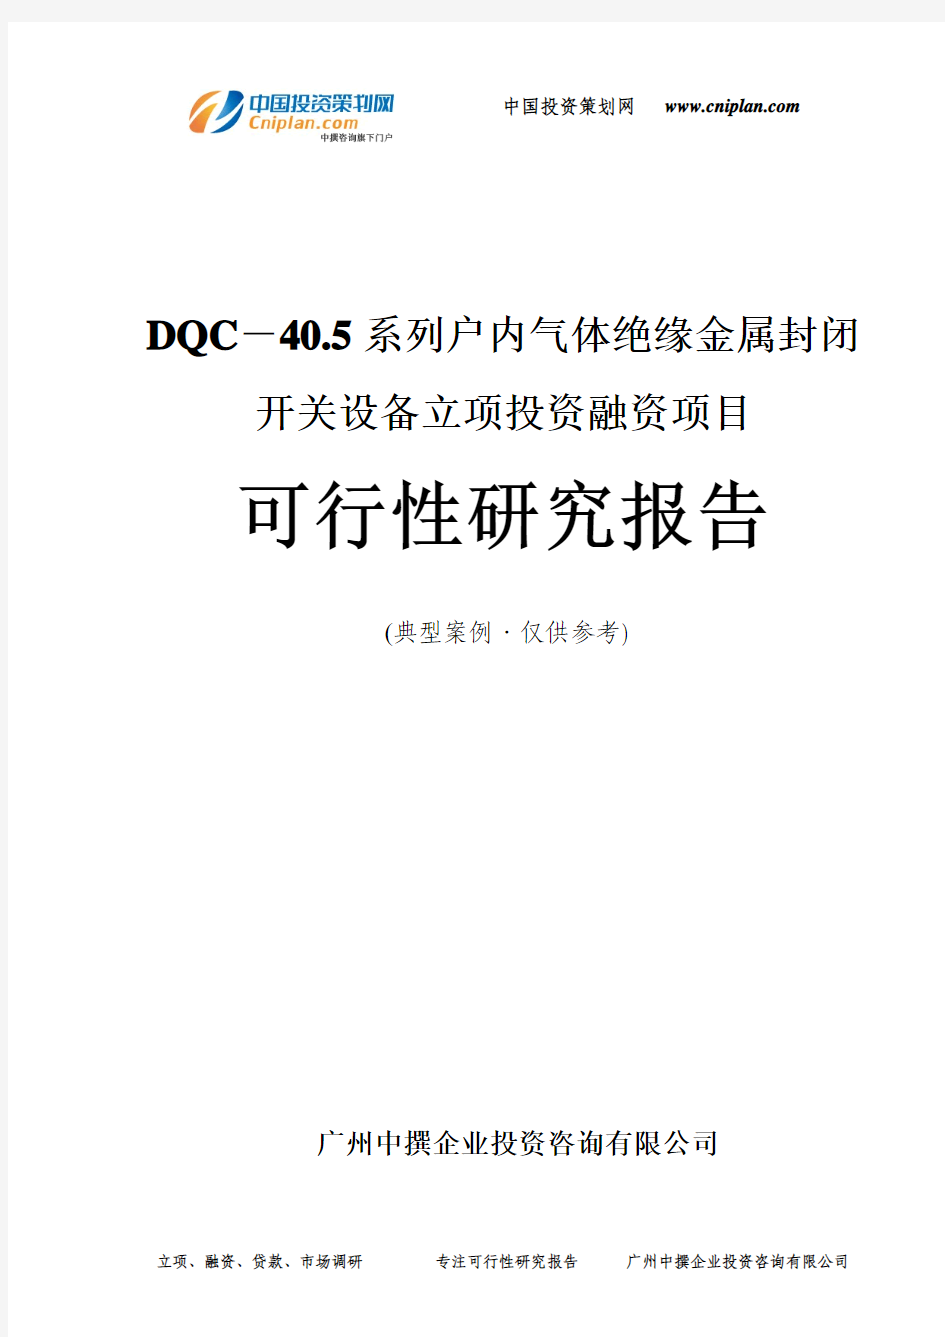 DQC-40.5系列户内气体绝缘金属封闭开关设备融资投资立项项目可行性研究报告(中撰咨询)